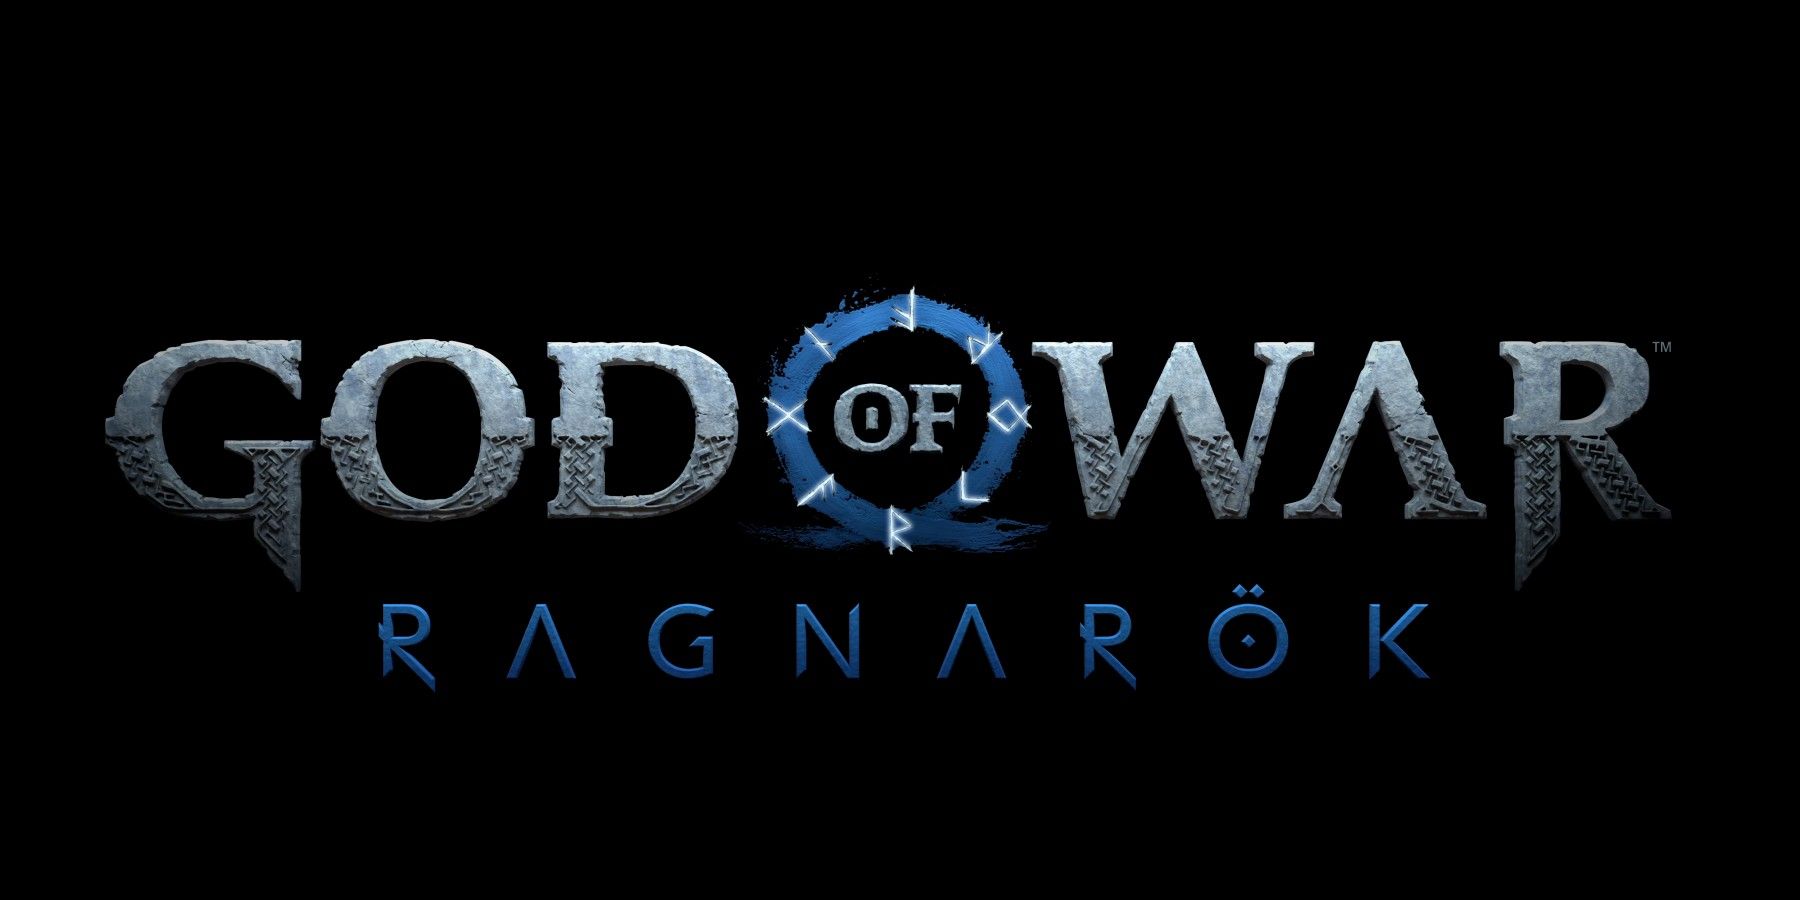 Directorul de artă God of War Ragnarok spune „încă nu ai văzut nimic”